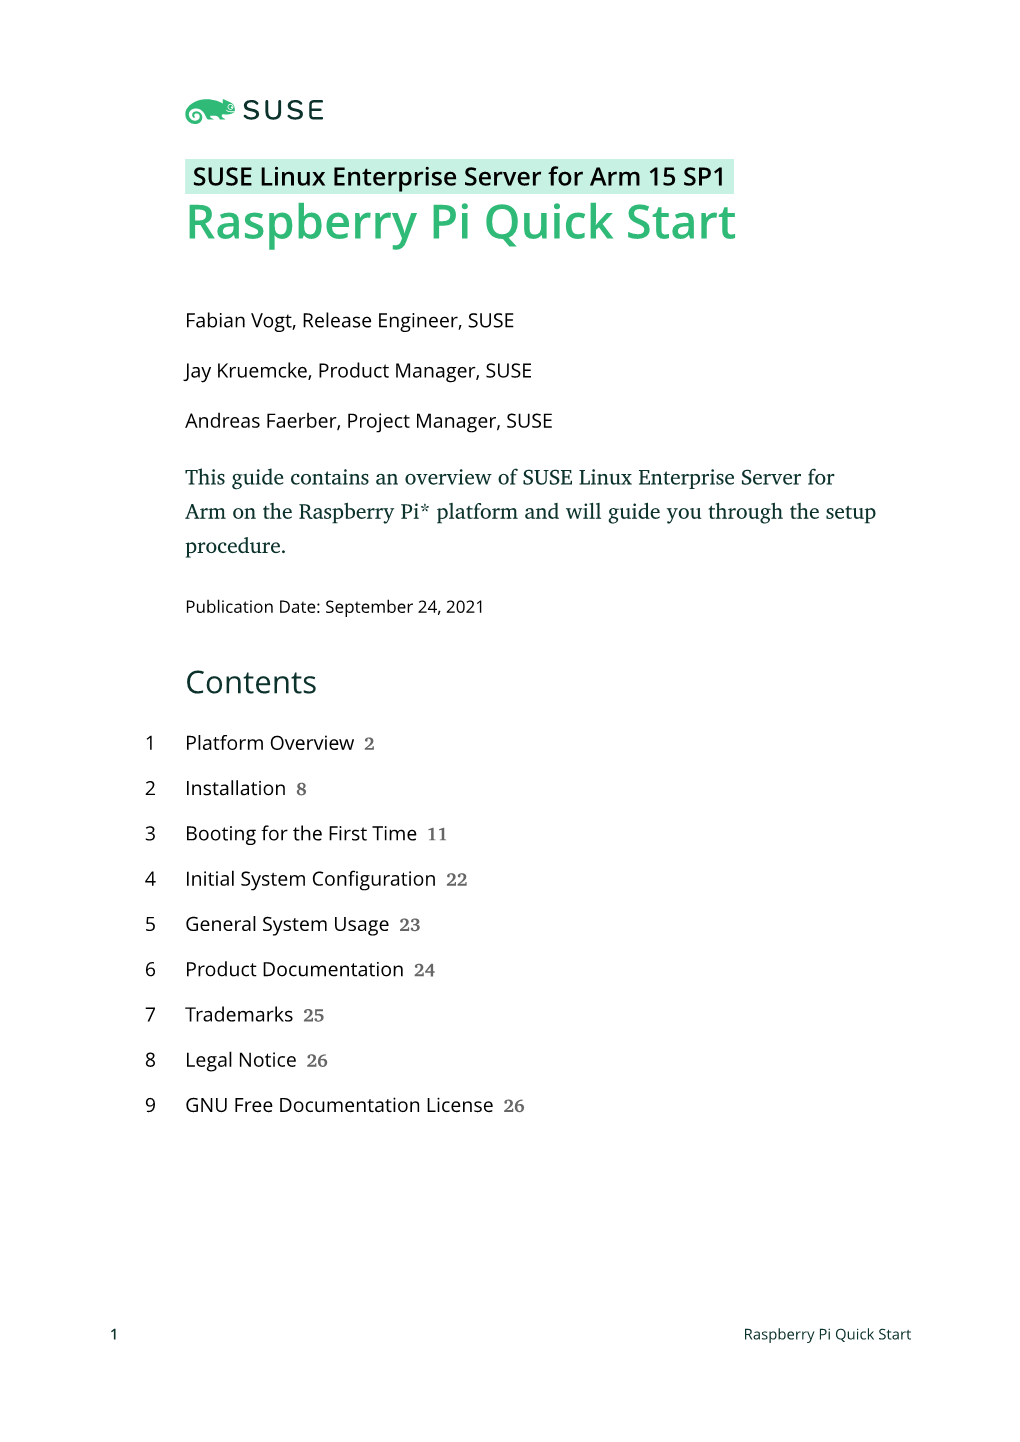 Raspberry Pi Quick Start